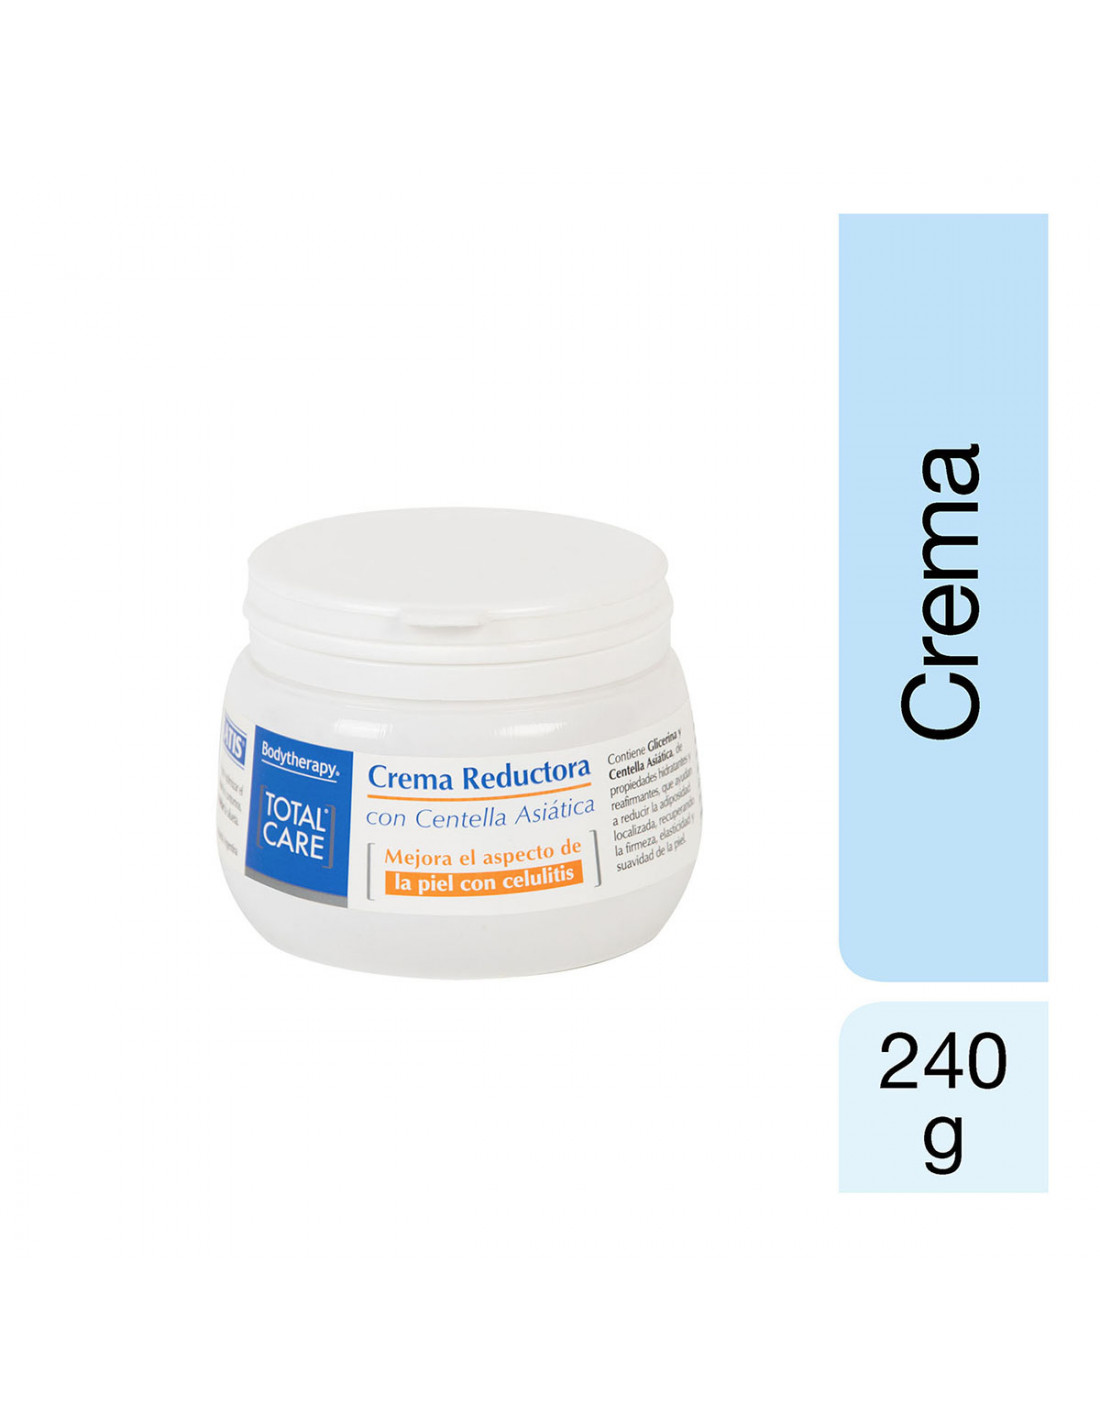 Bodytherapy Total Care Crema Reductora con Centella Asiática 240 G